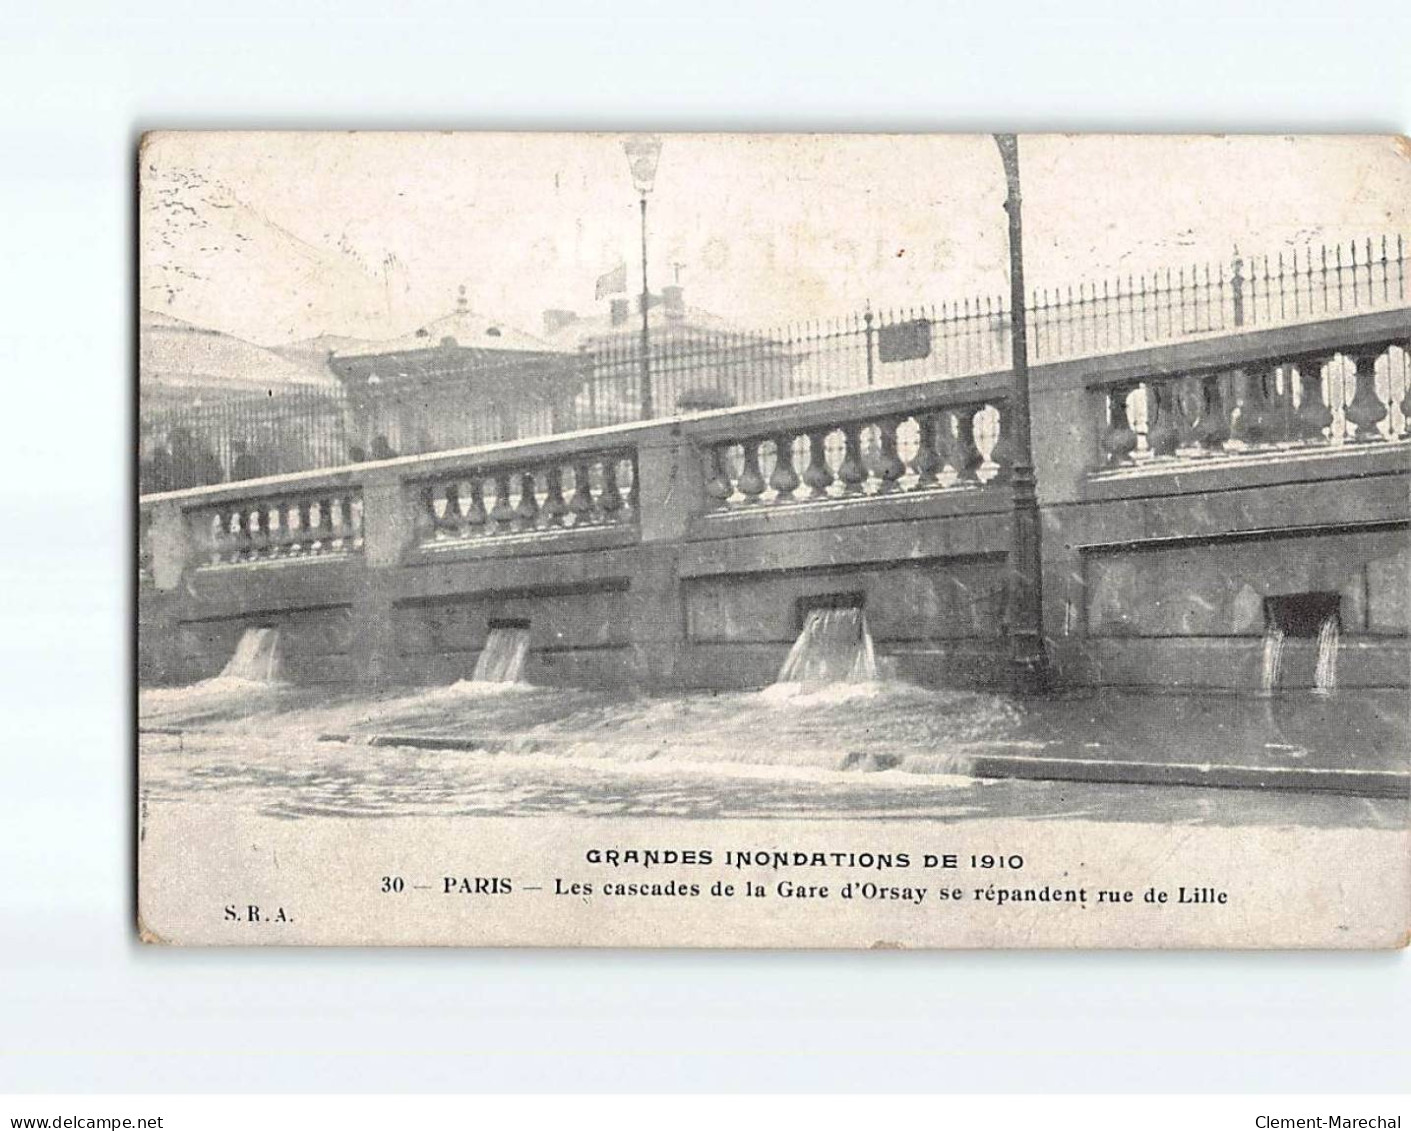 PARIS: Inondations 1910, Les Cascades De La Gare D'Orsay Se Répandent Rue De Lille - état - Inondations De 1910